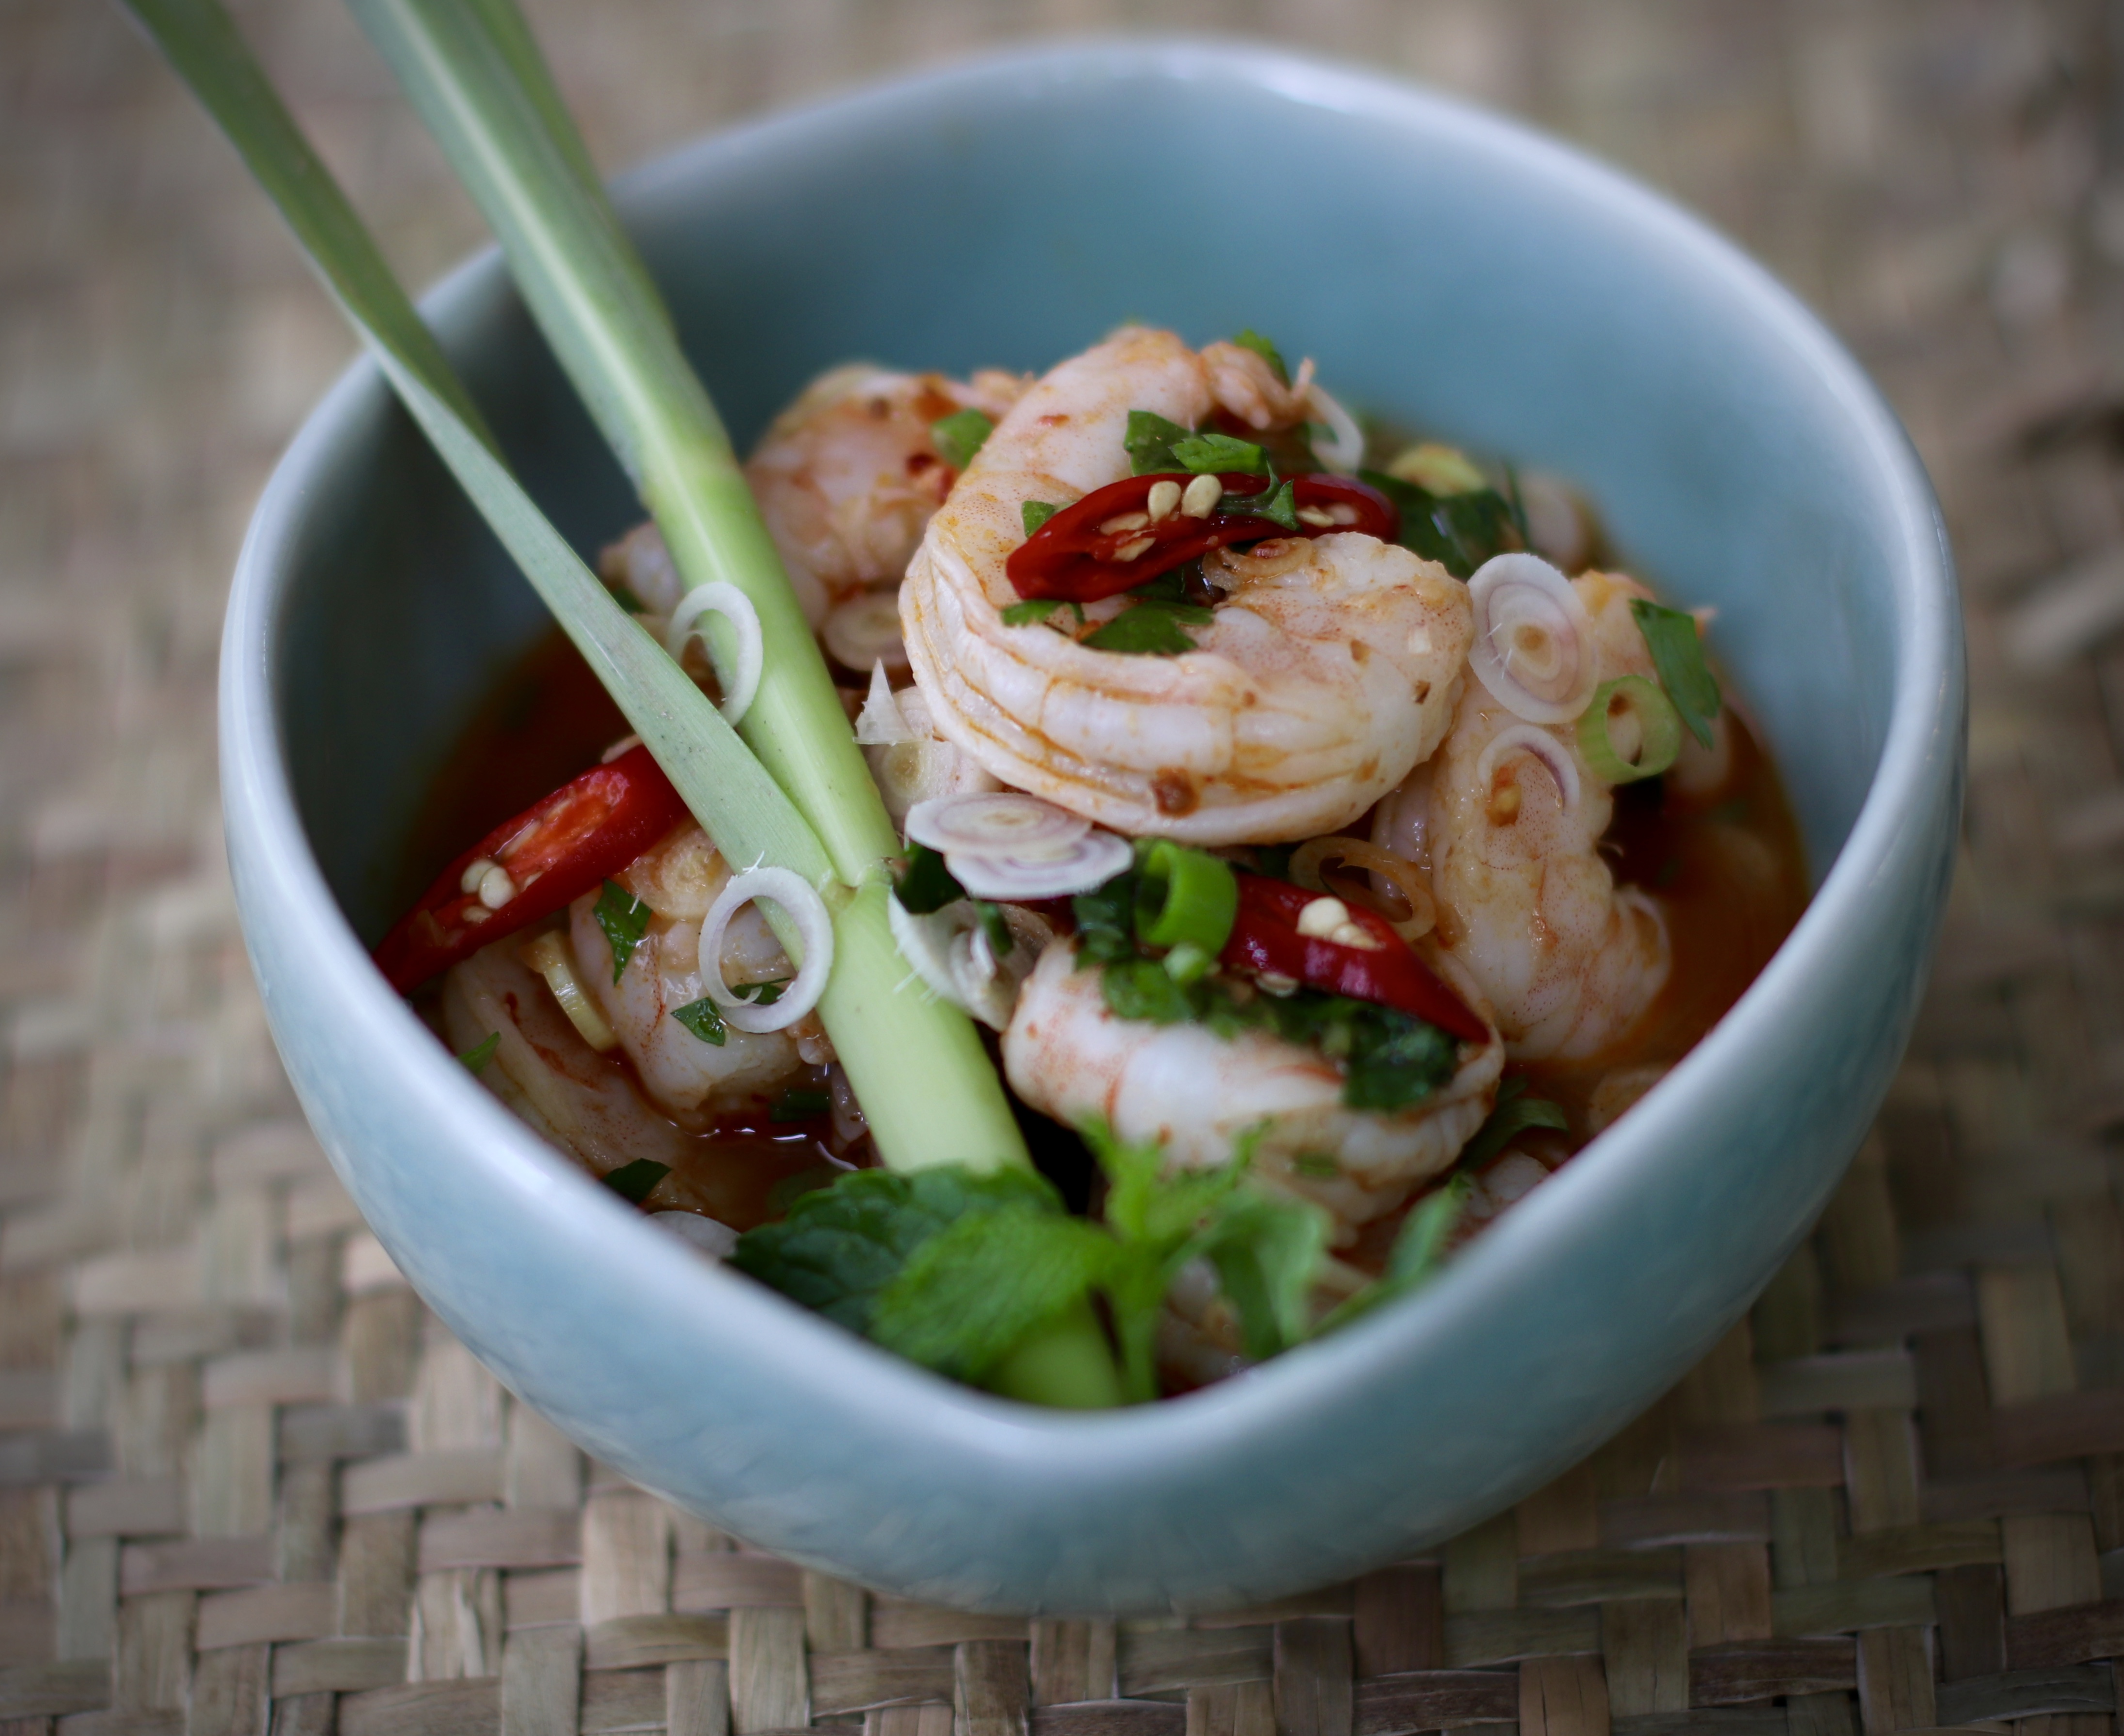 Pla Goong – Dancing Shrimp